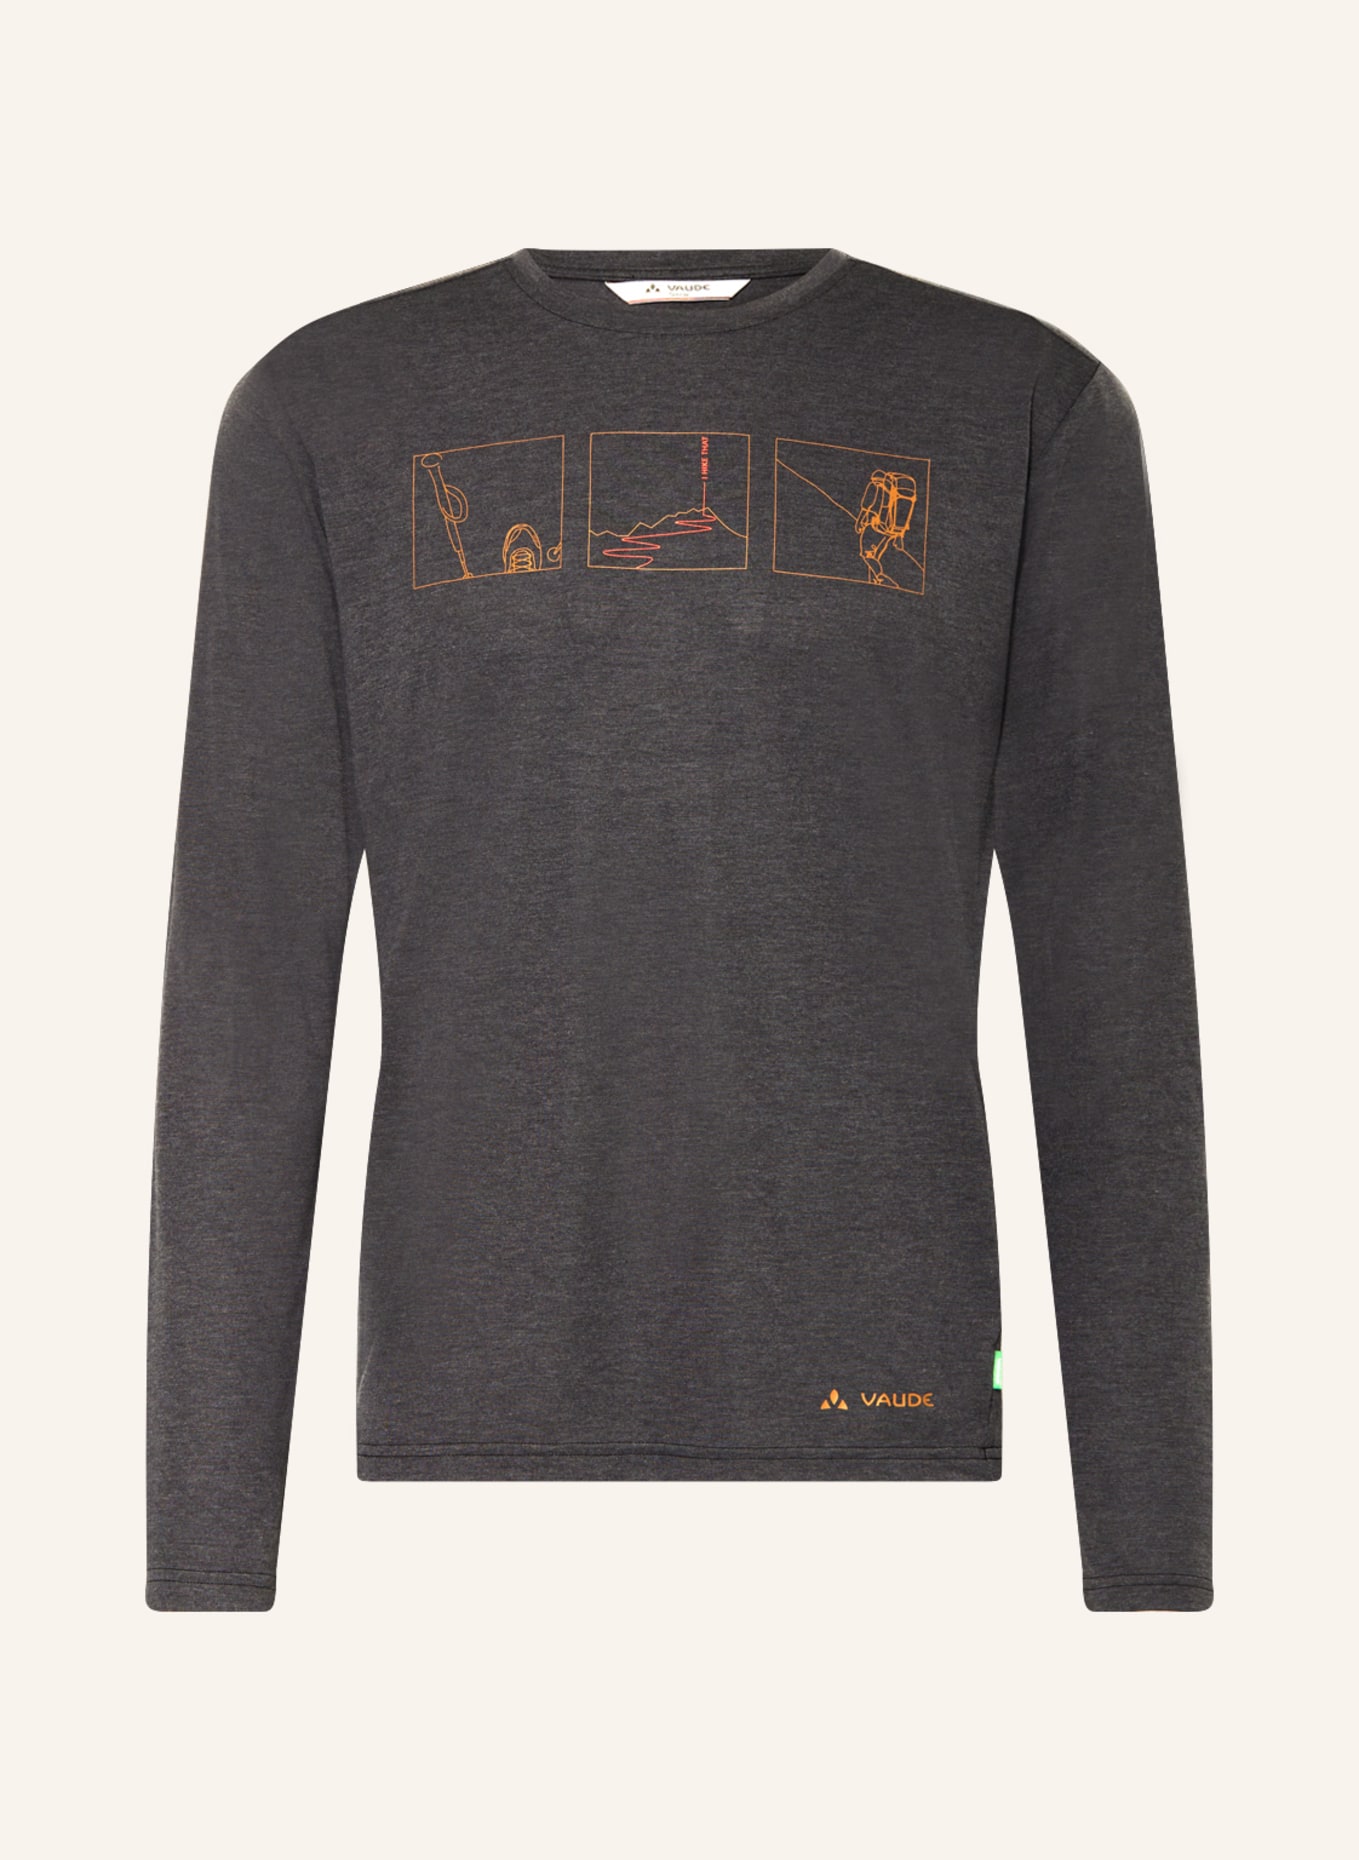 VAUDE Long sleeve shirt ROSEMOOR III, Color: DARK GRAY/ ORANGE (Image 1)